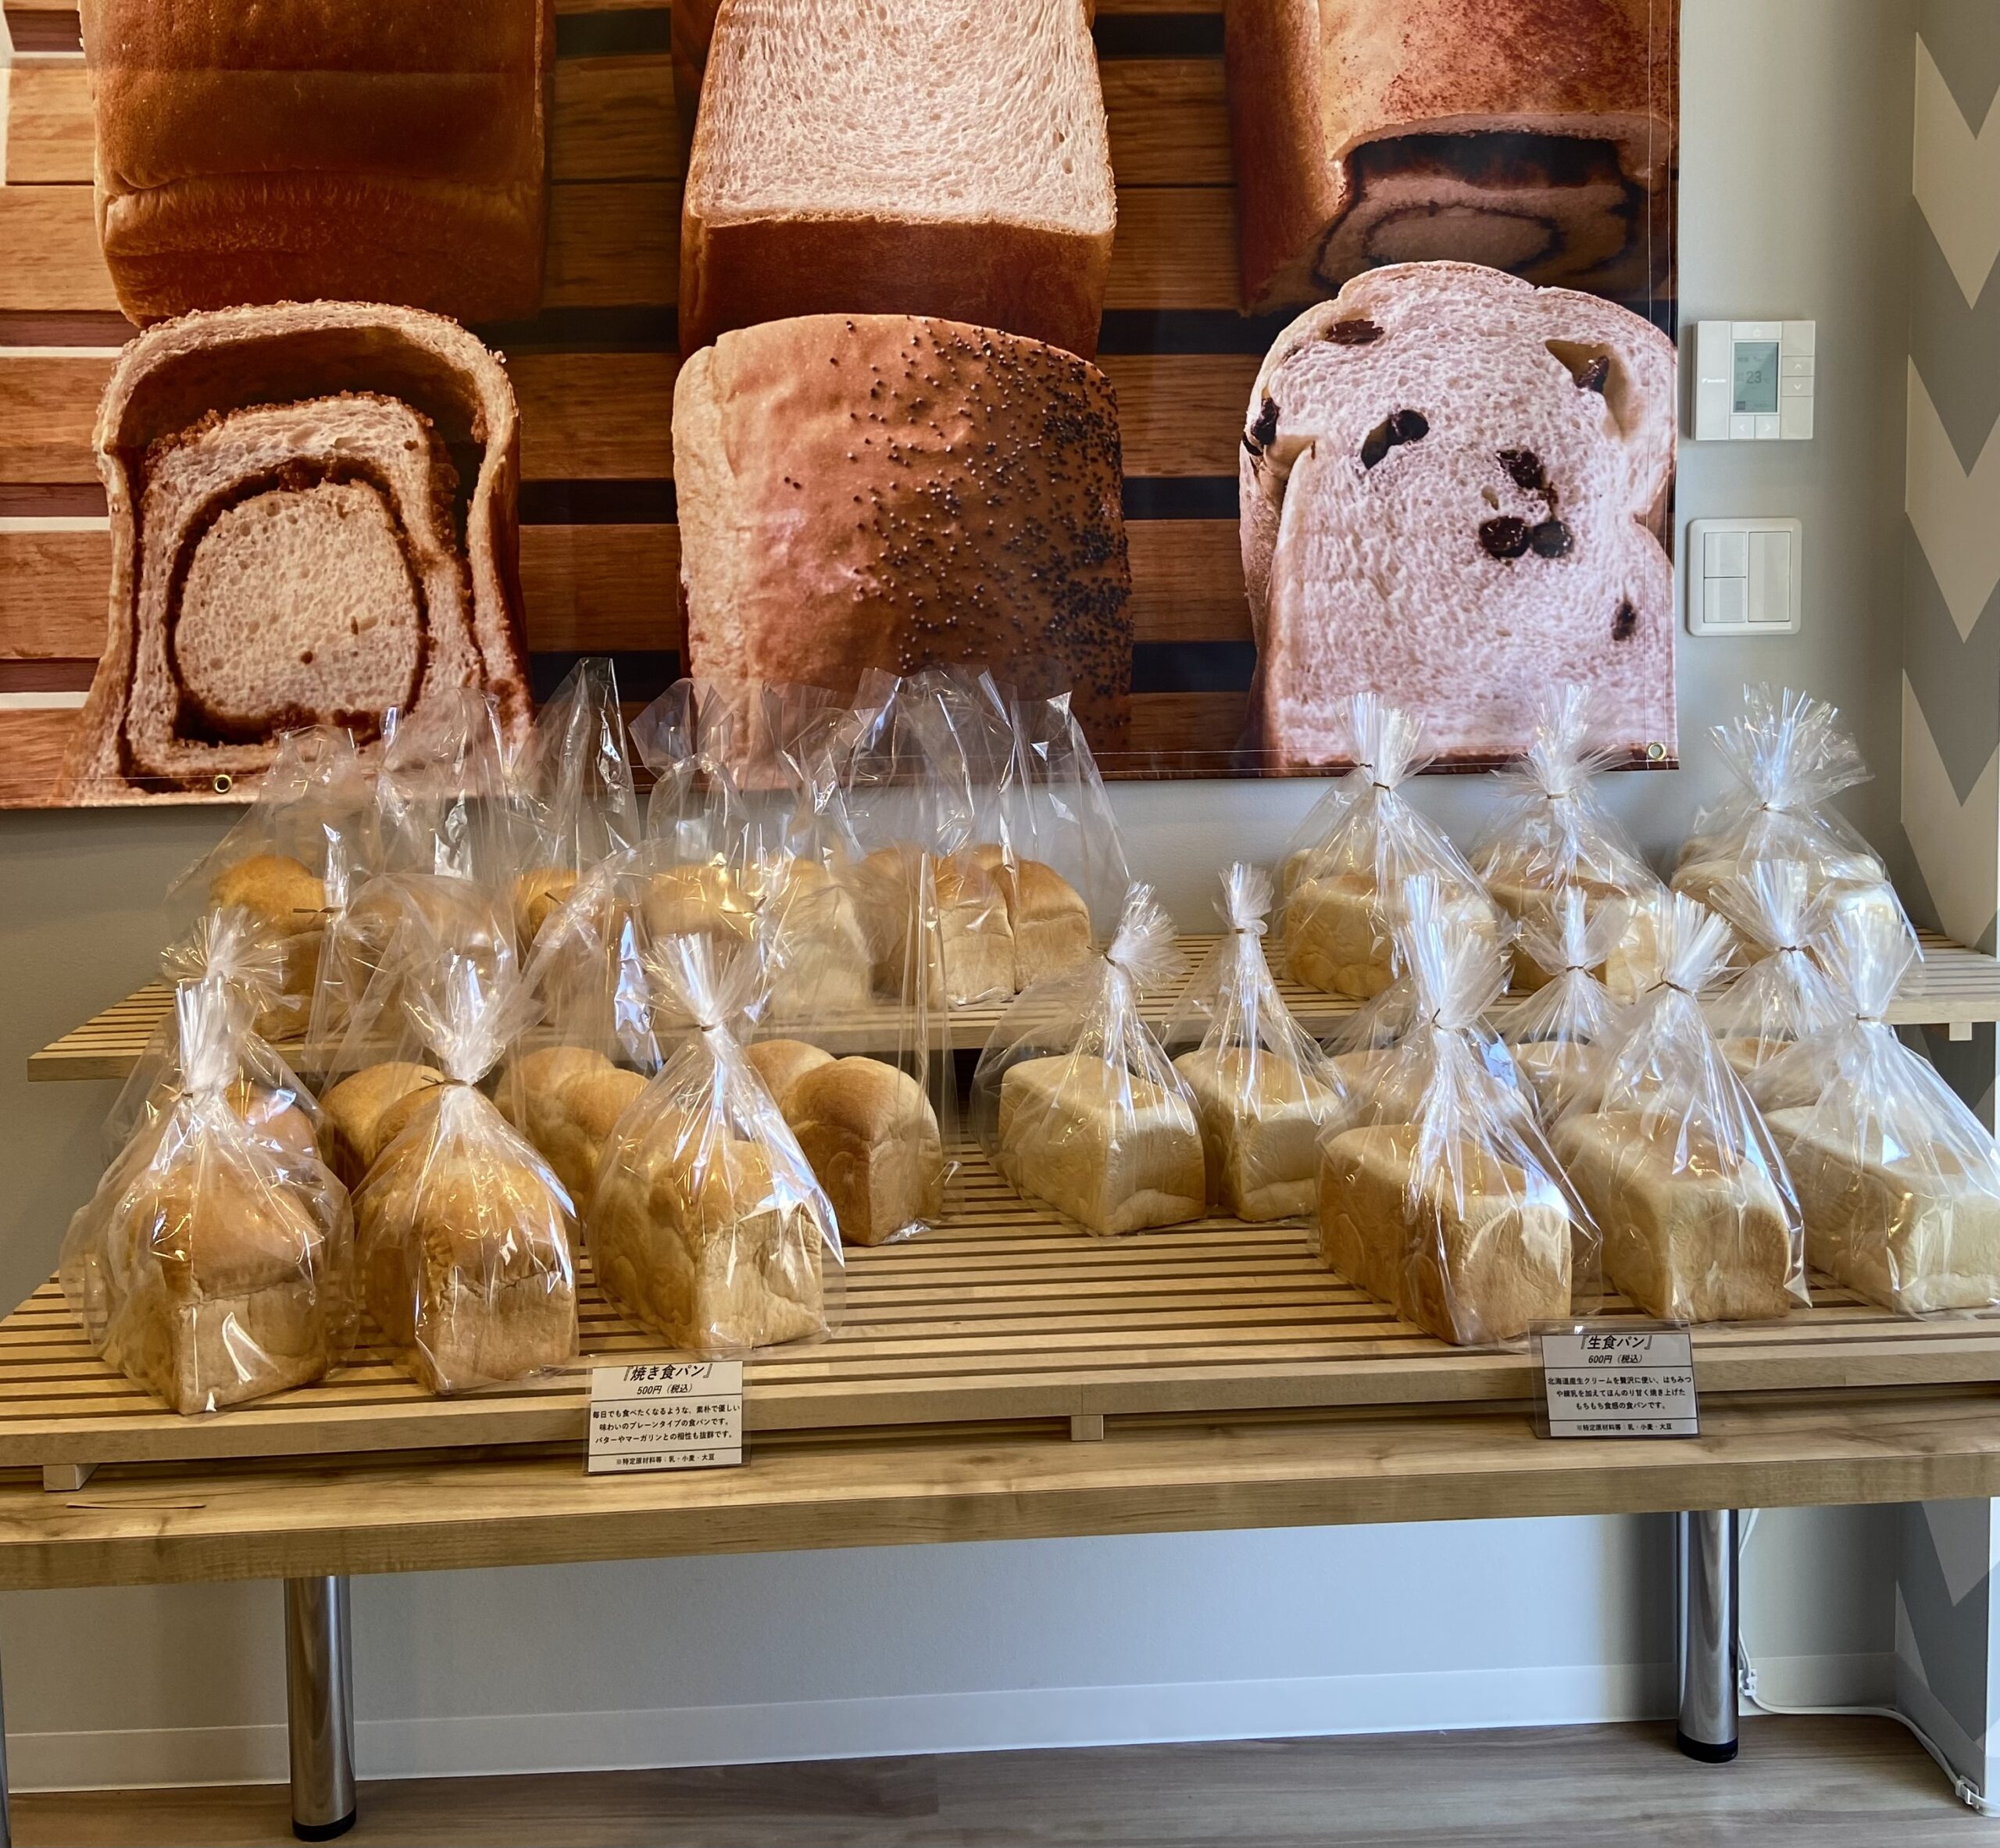 八千代中央駅近くにオープンした「八千代パン」に行ってきました！パティシエが作ったしっとりとろける生食パンに出会えます♪